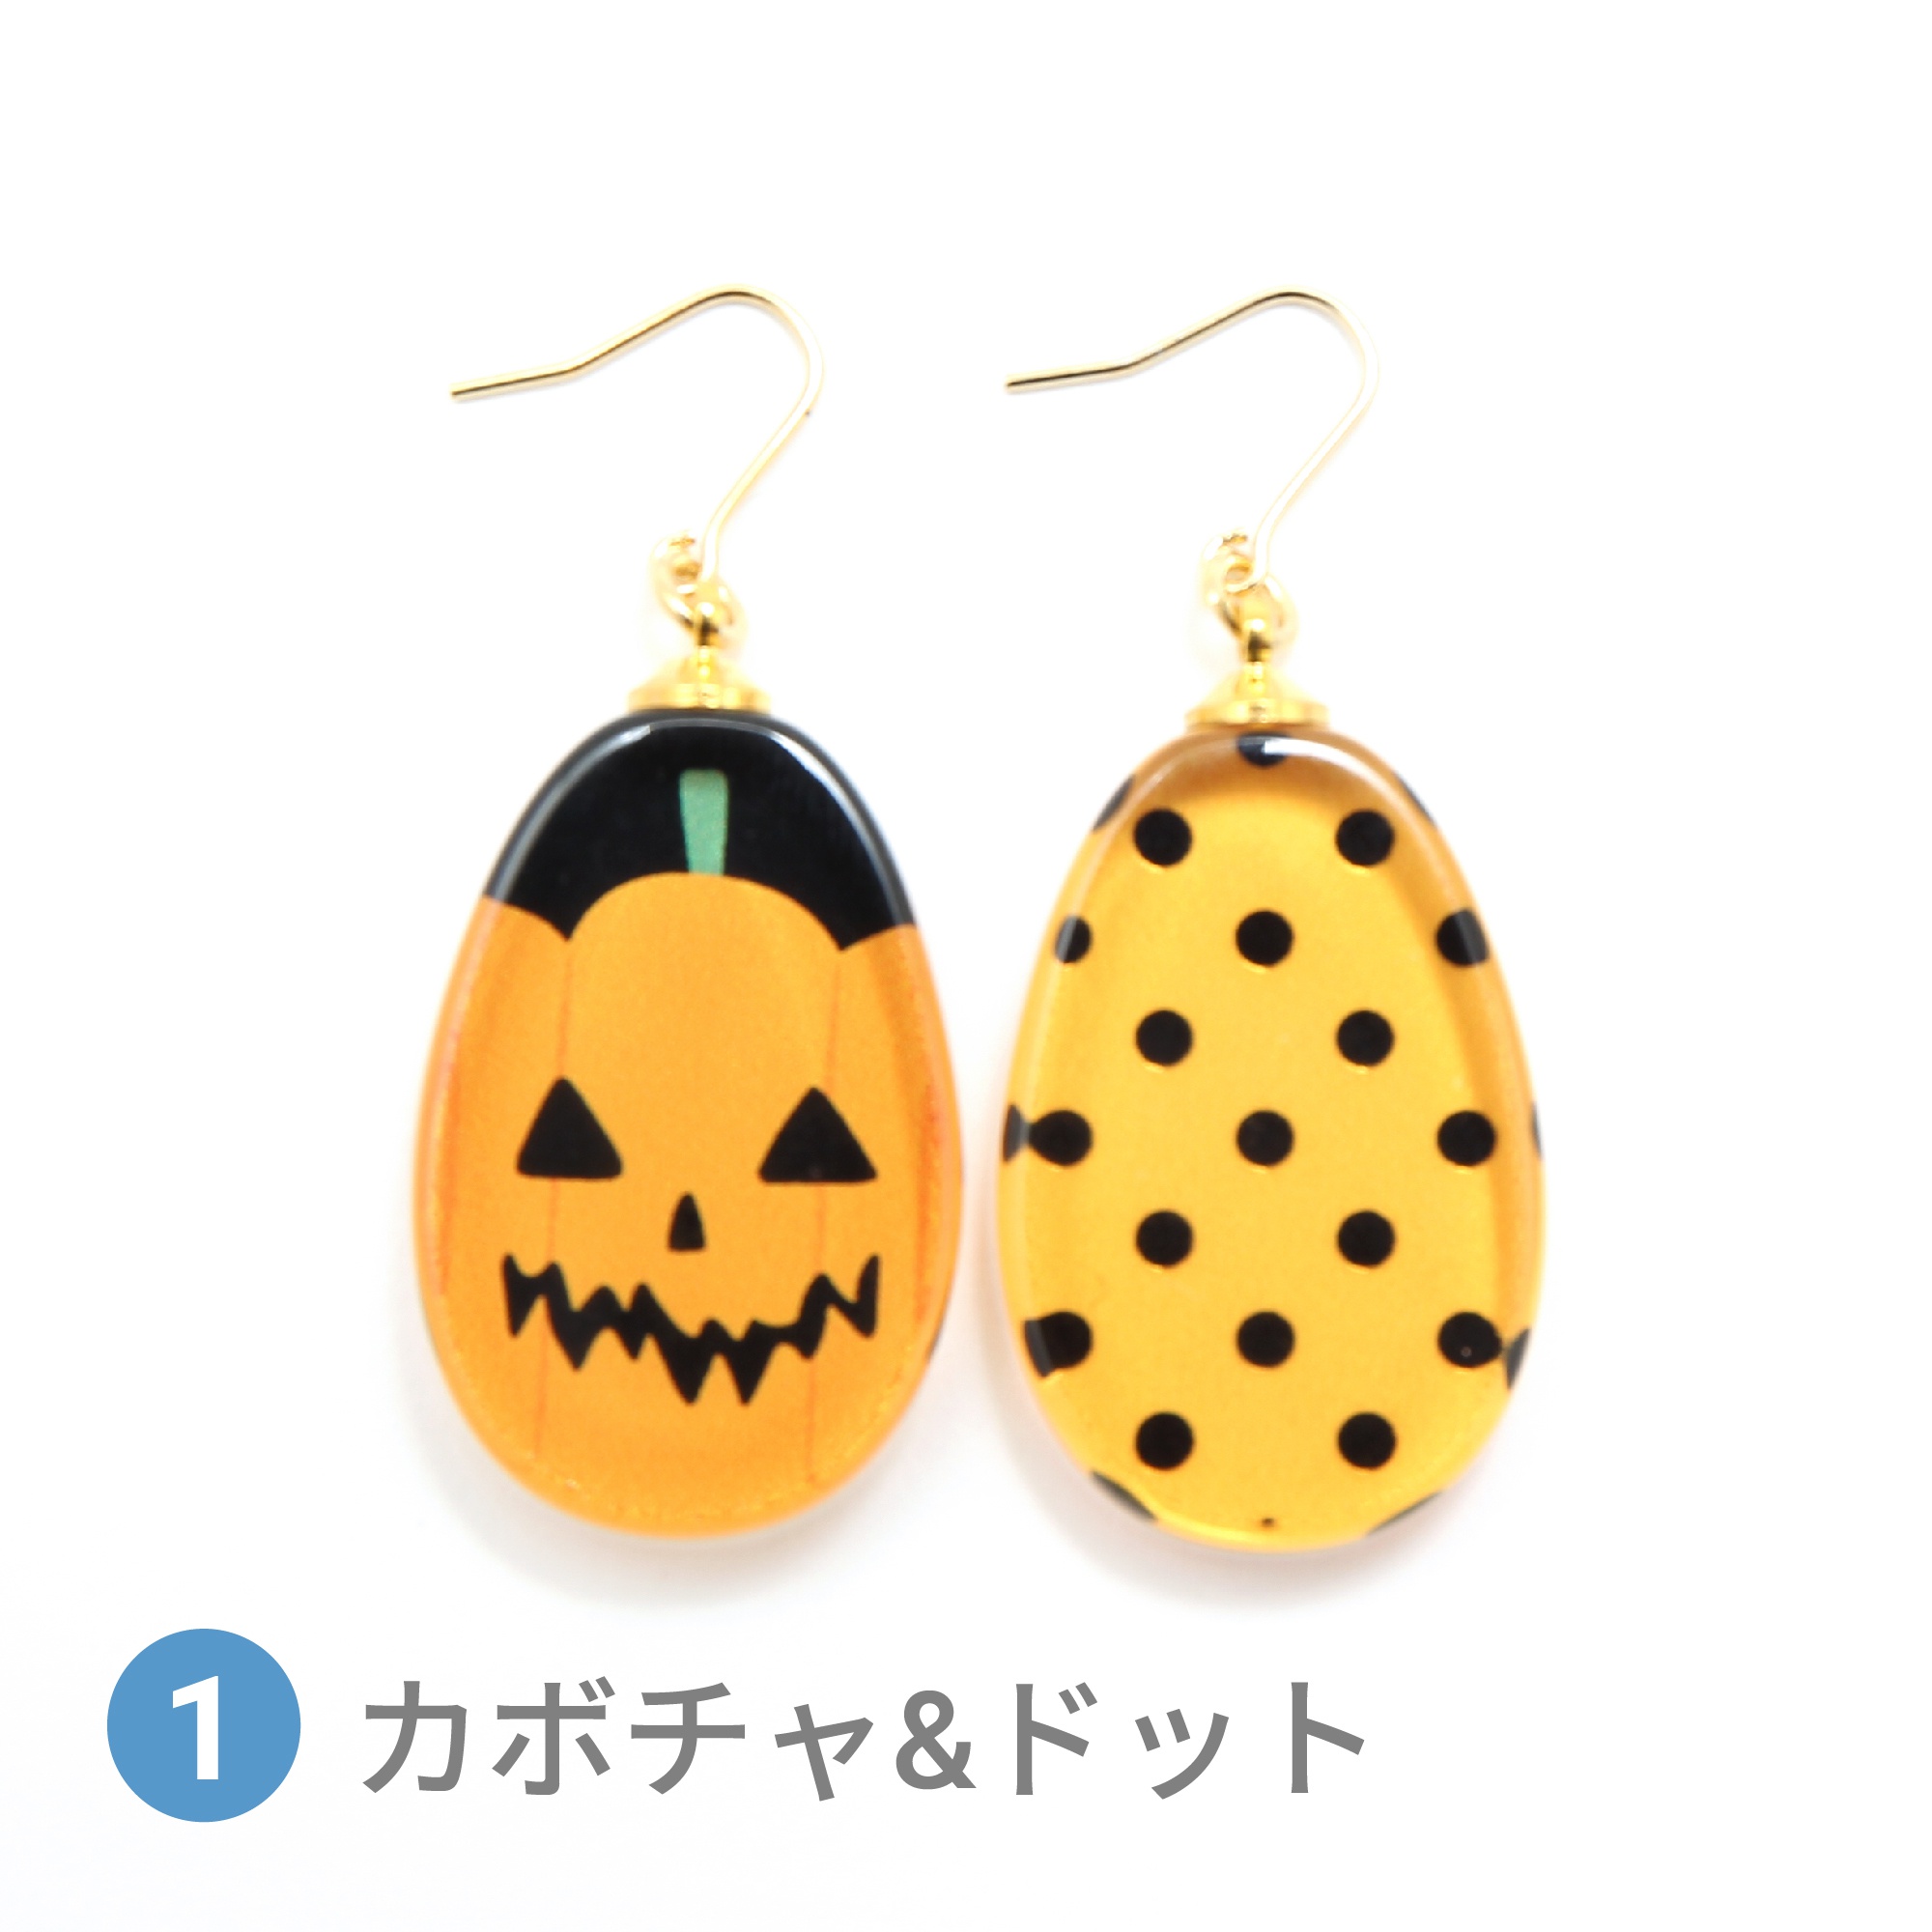 Glass accessories Pierced Earring HALLOWEEN MOTIF pumpkin&dot drop shape